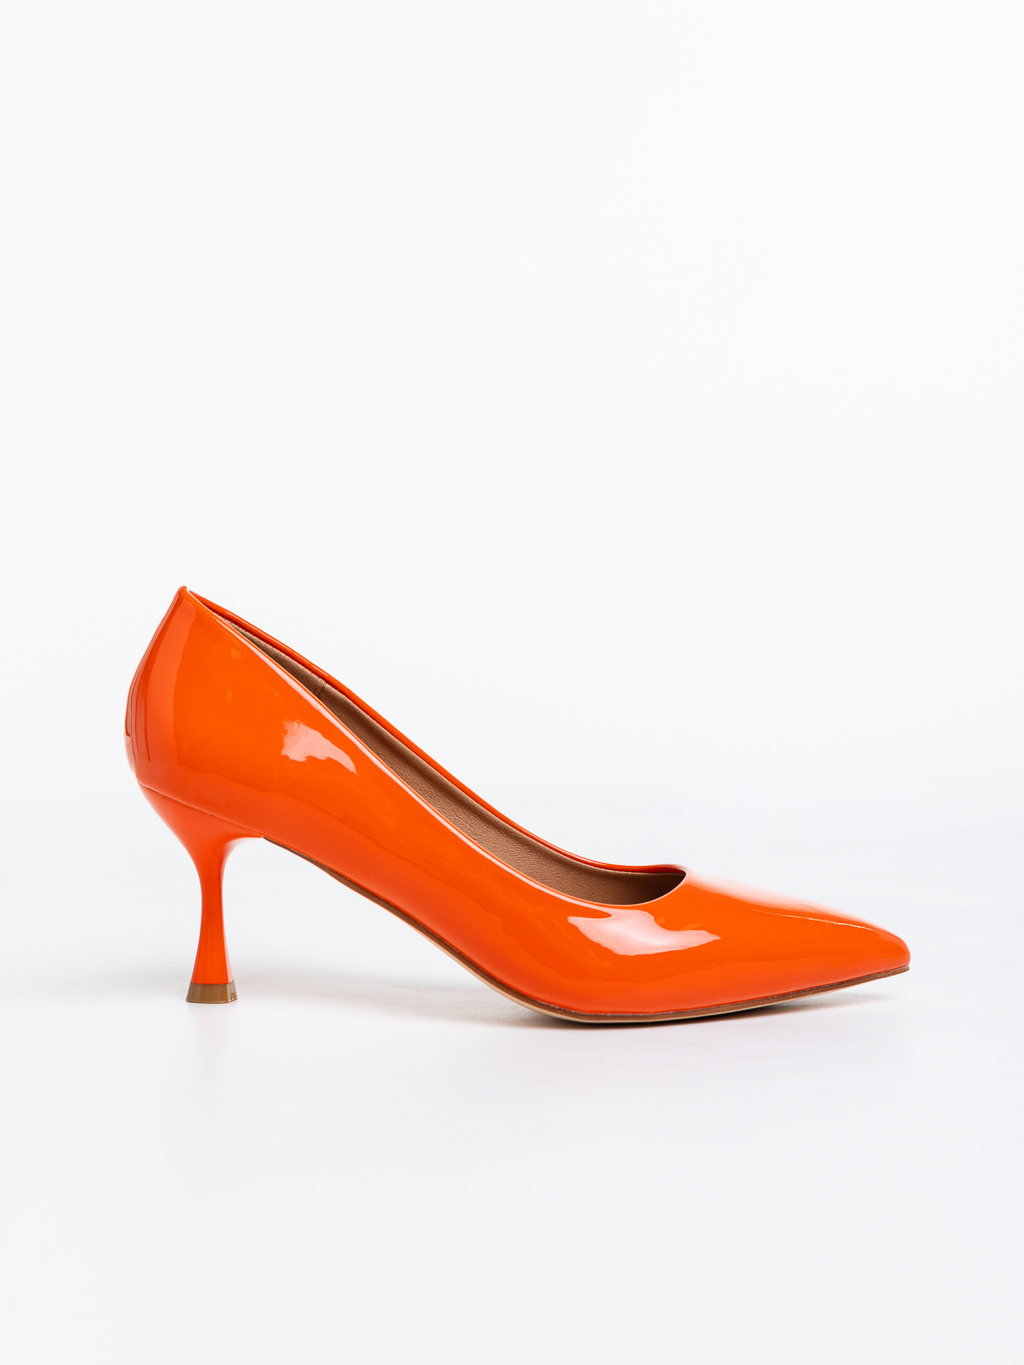 Pantofi dama portocalii cu toc din piele ecologica lacuita Solene, 5 - Kalapod.net